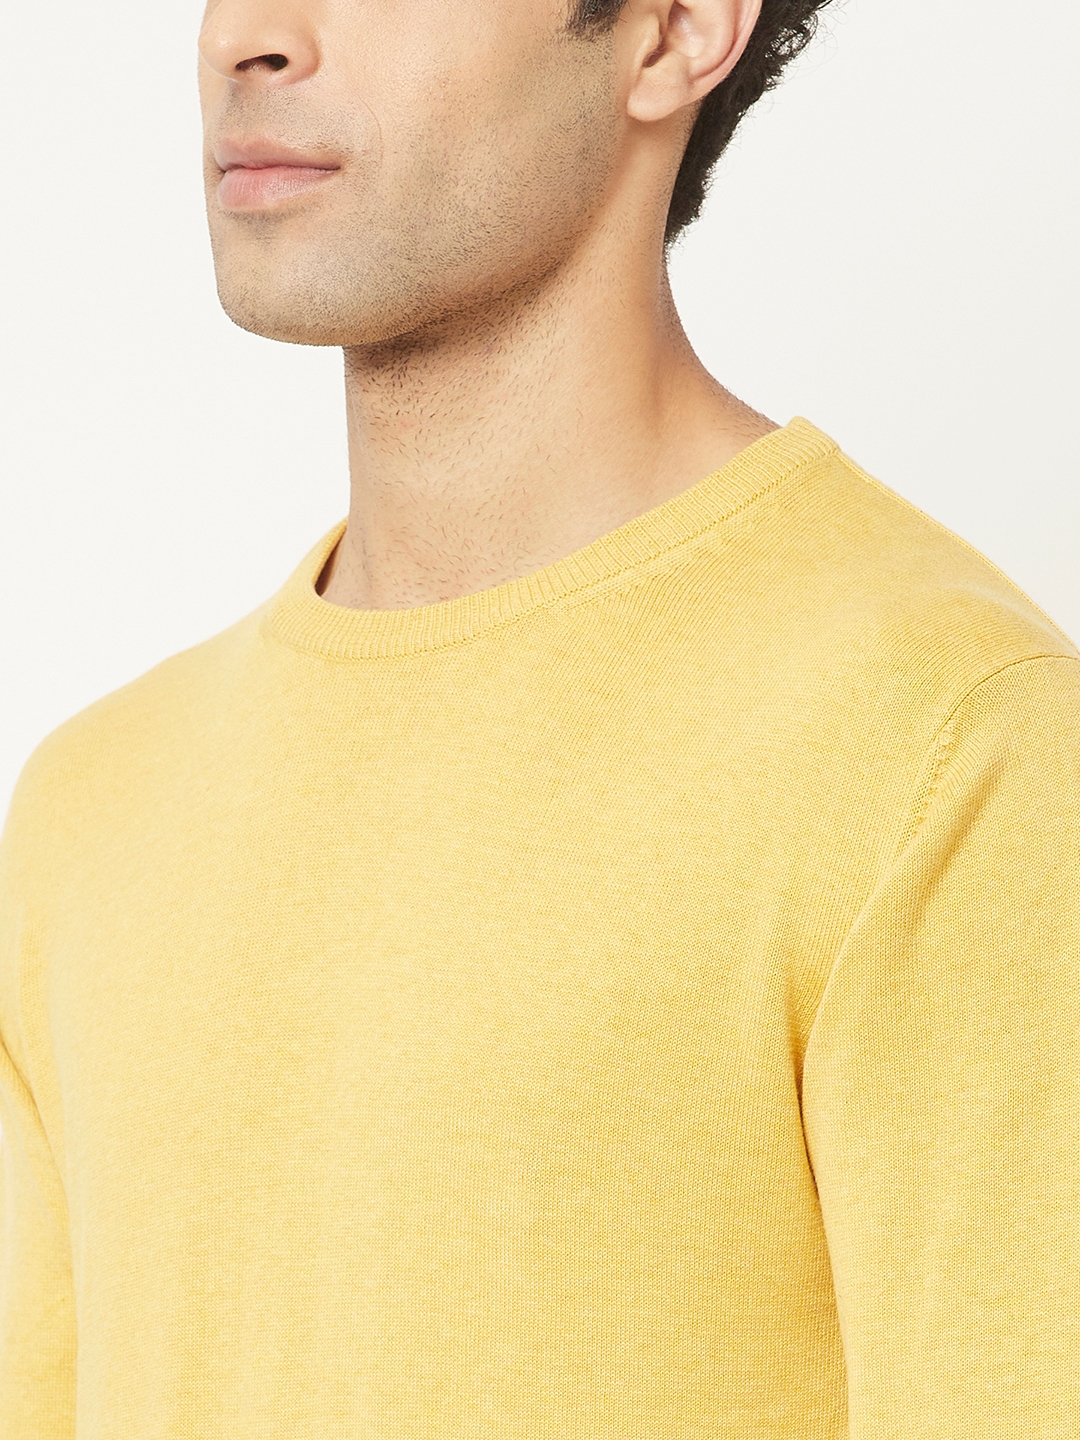 Crimsoune Club | Crimsoune Club Men Yellow Sweater in Pure Cotton 5